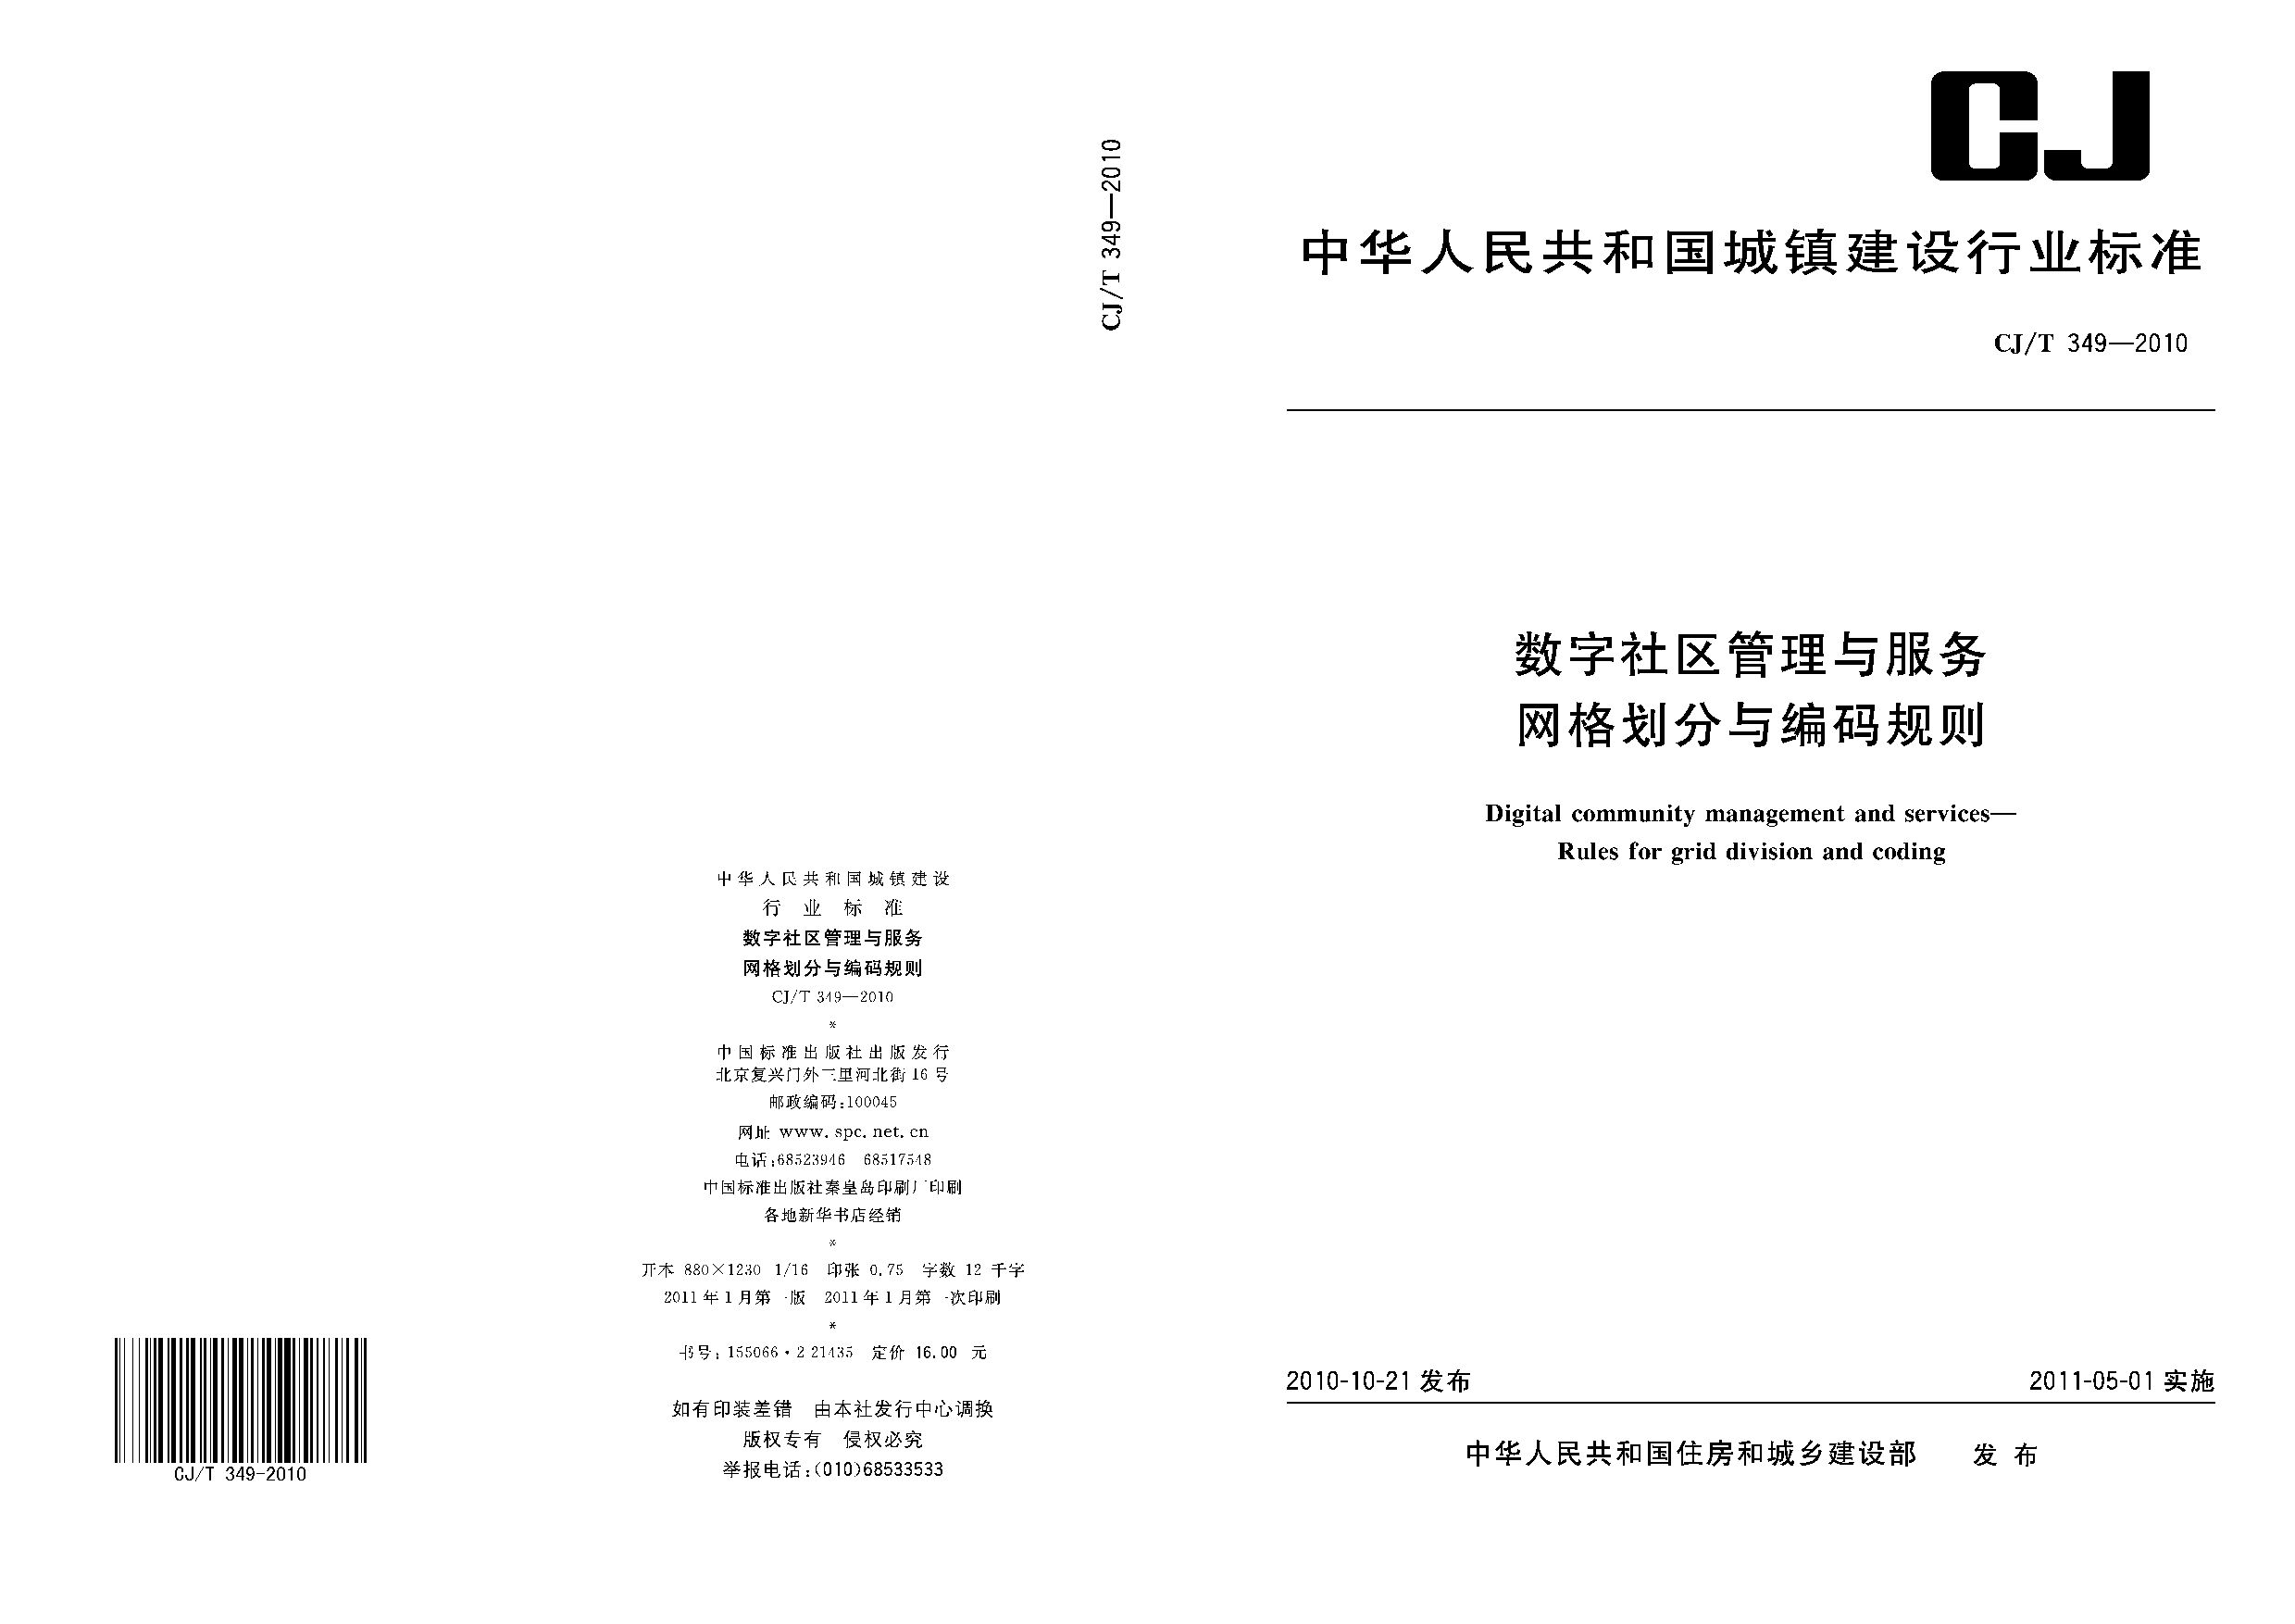 CJ/T 349-2010封面图